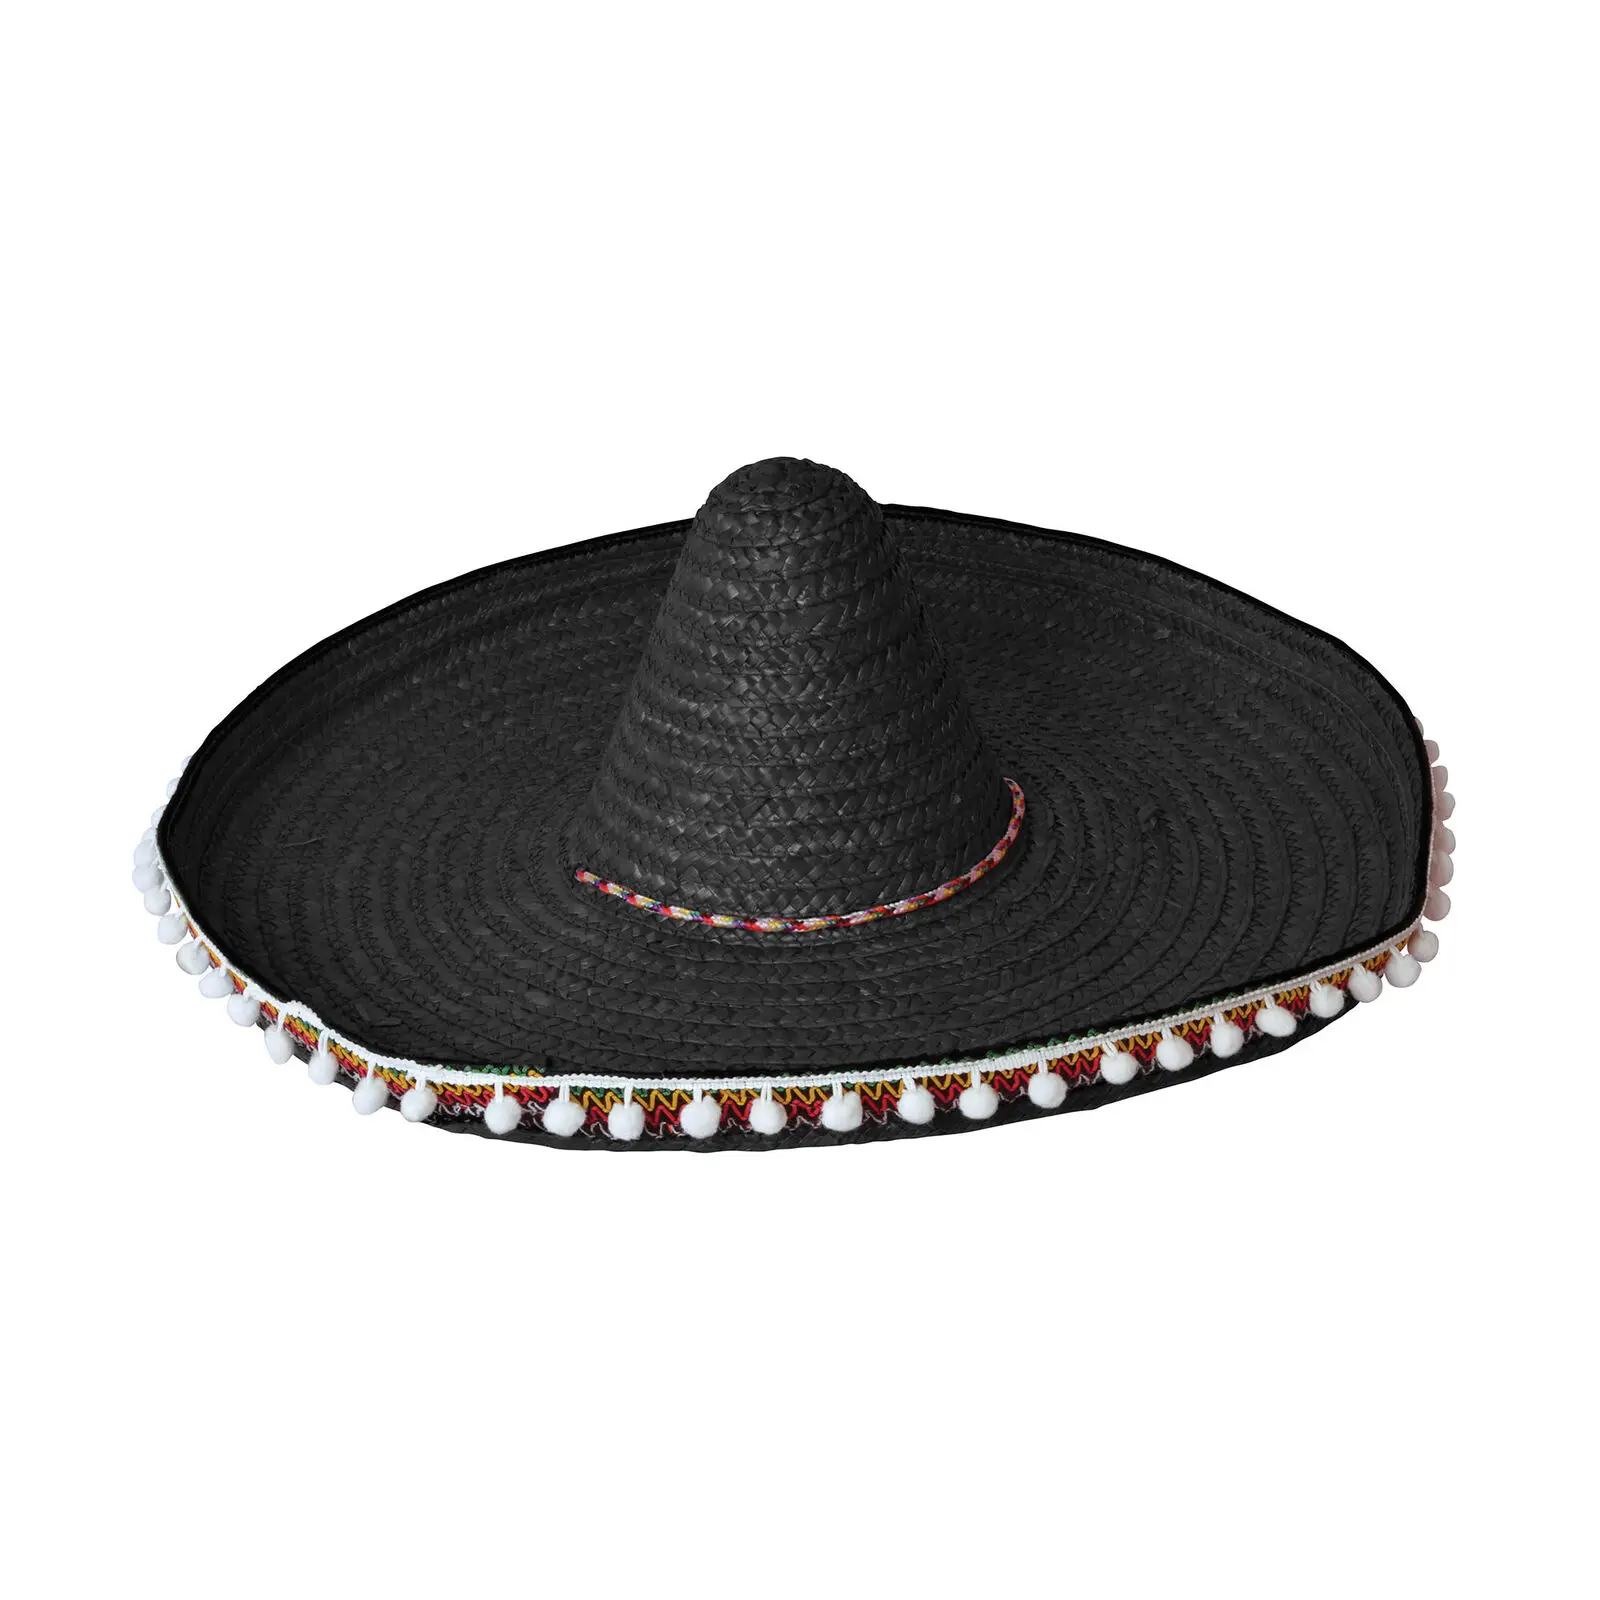 ฟาง Sombrero 60 ซม. สีดำเม็กซิโกเม็กซิกัน Wild West คาวบอยหมวก Bandit แฟนซีชุด CG798